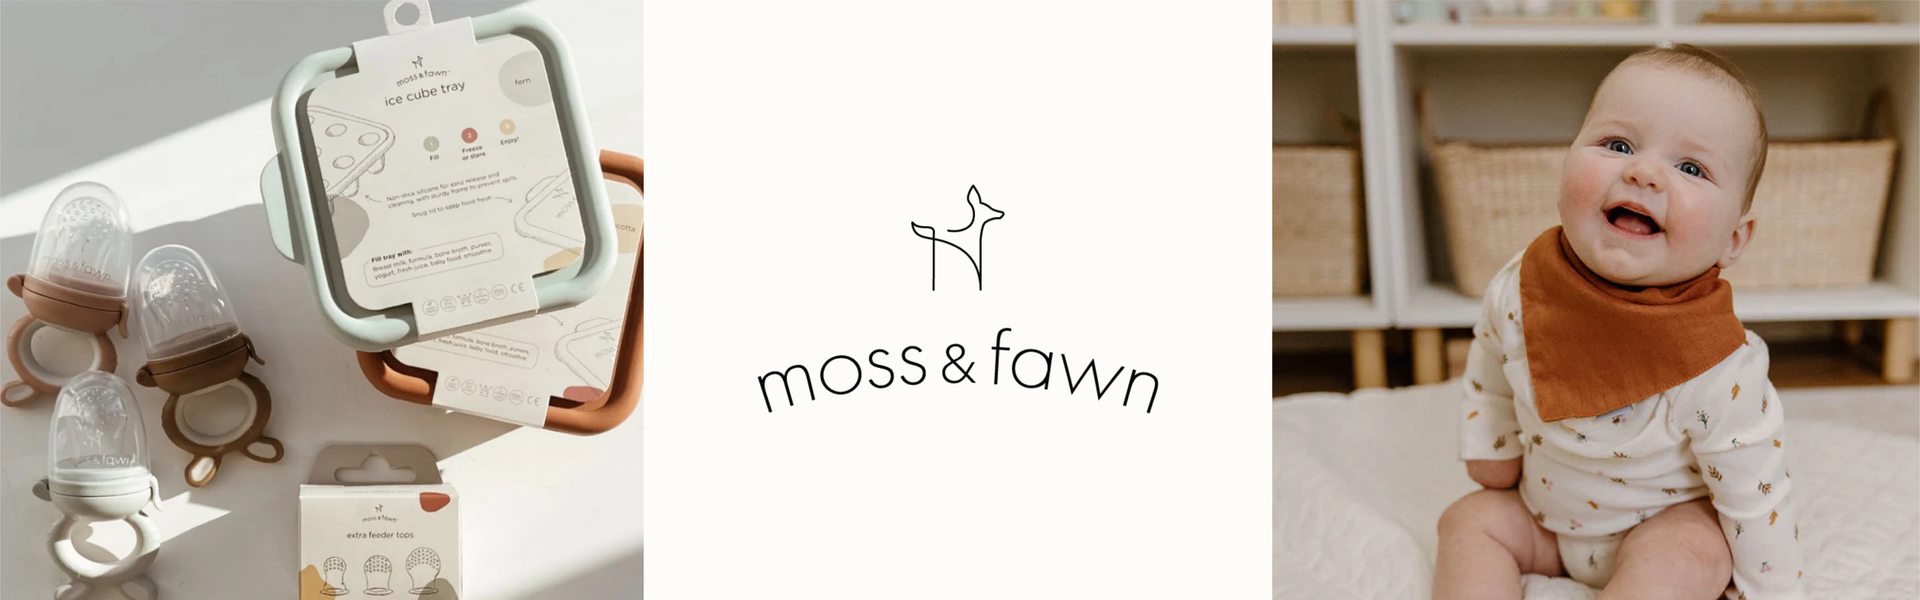 Moss & Fawn